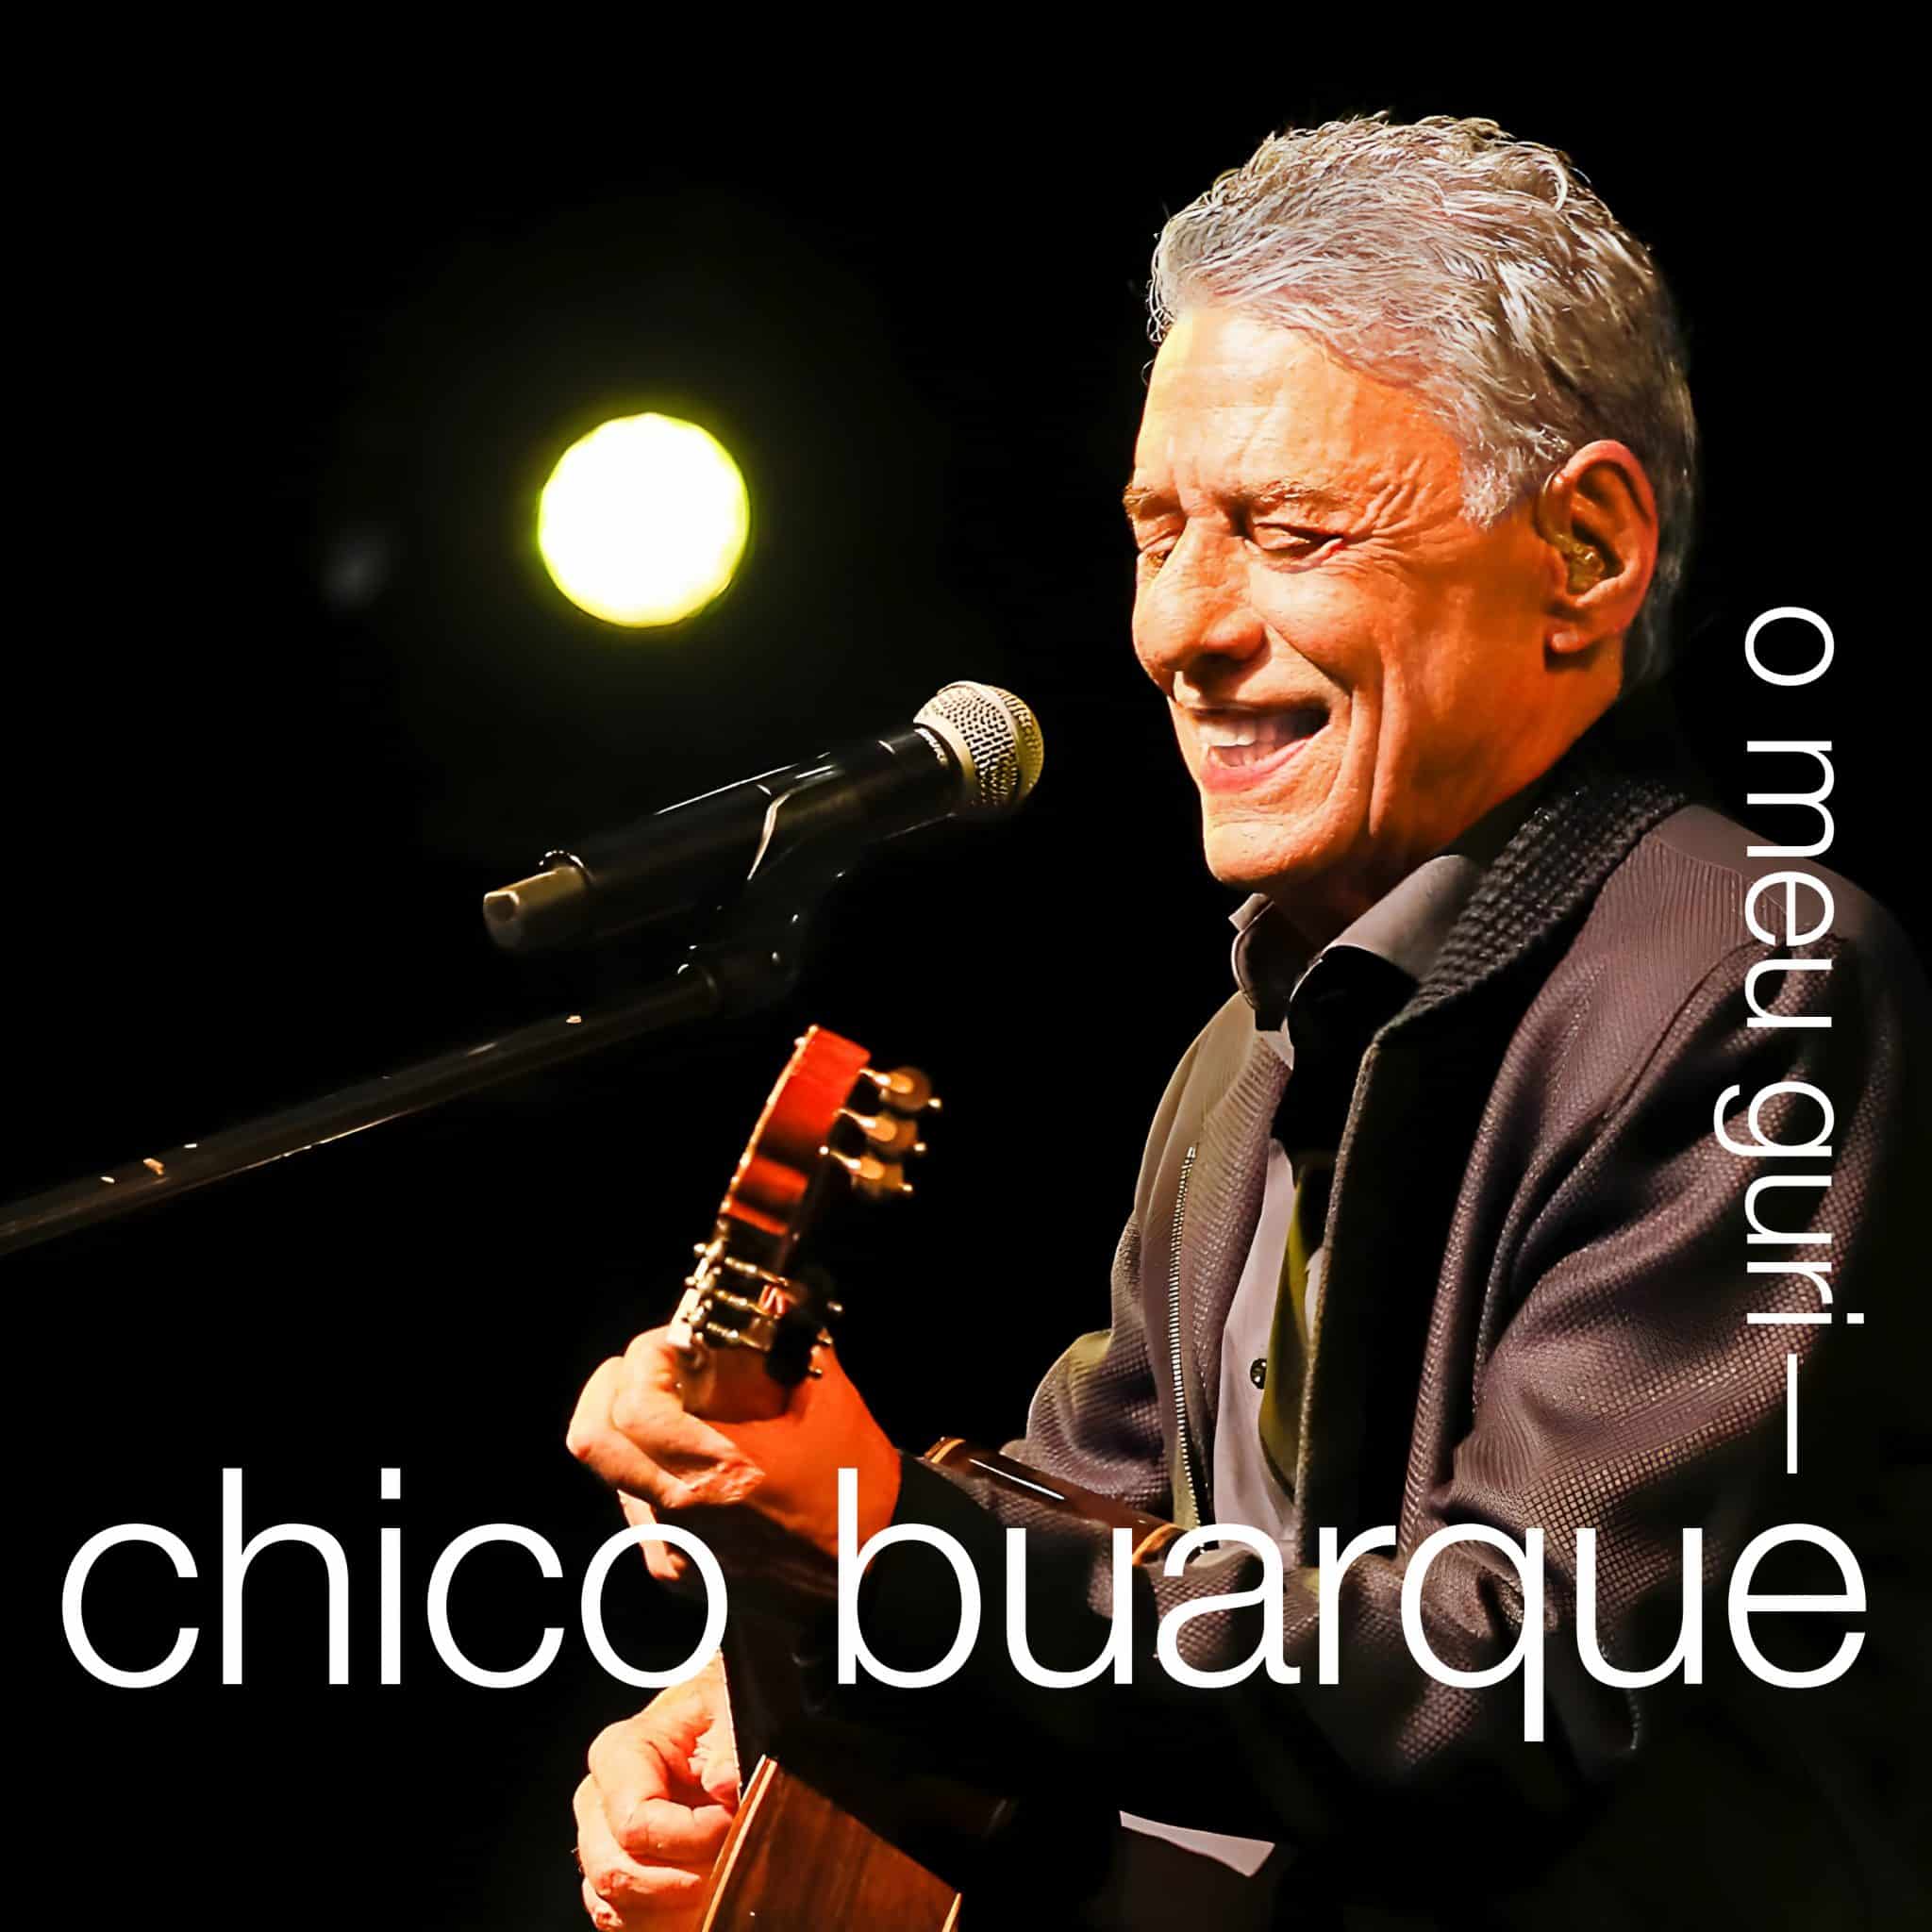 revistaprosaversoearte.com - Chico Buarque lança single gravado na turnê 'Que tal um samba?'